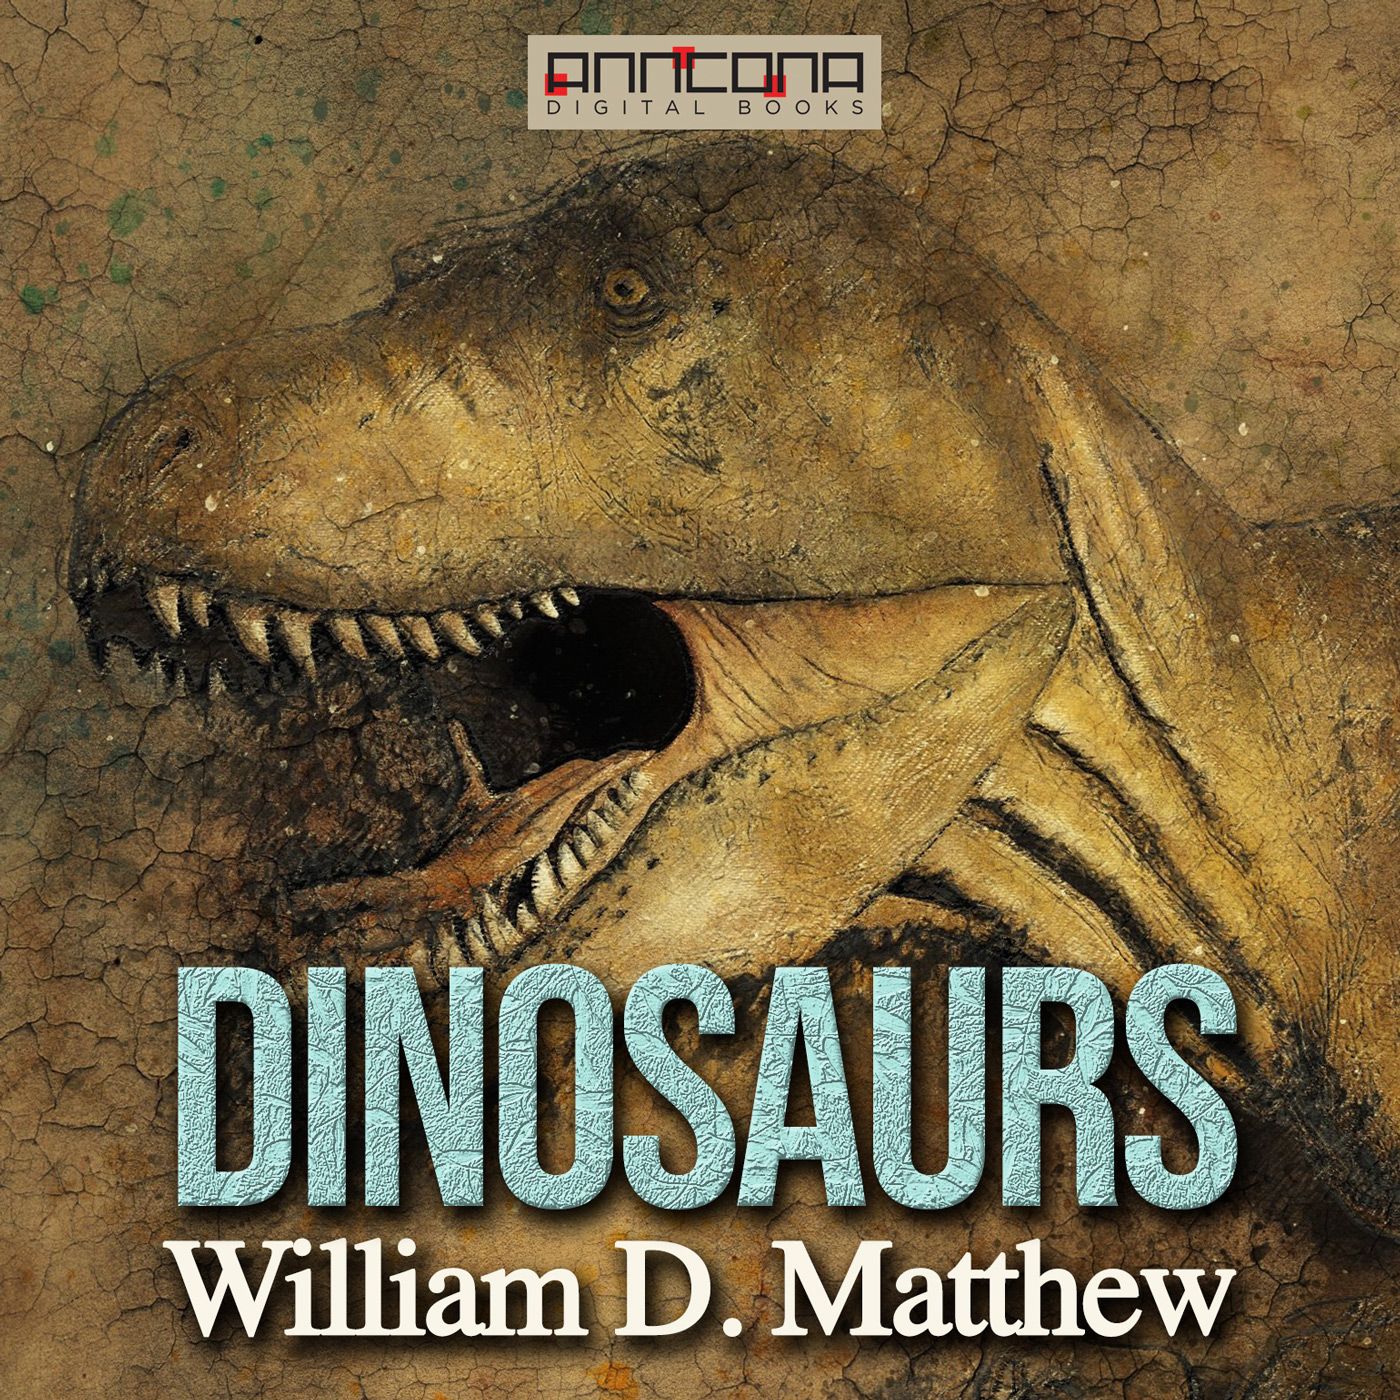 Dinosaurs, ljudbok av William Diller Matthew